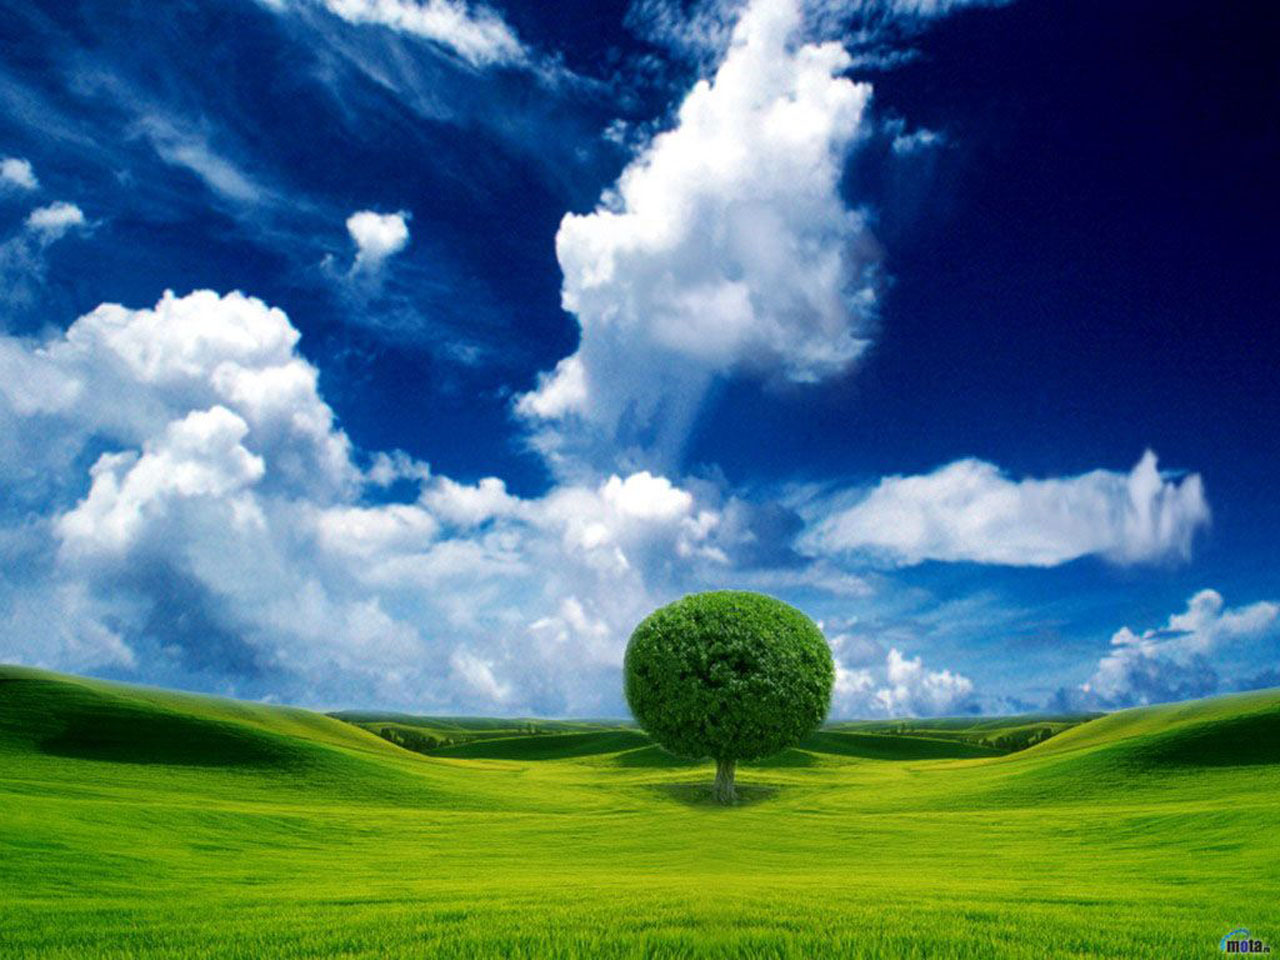 壁紙,空,自然の風景,草原,自然,緑